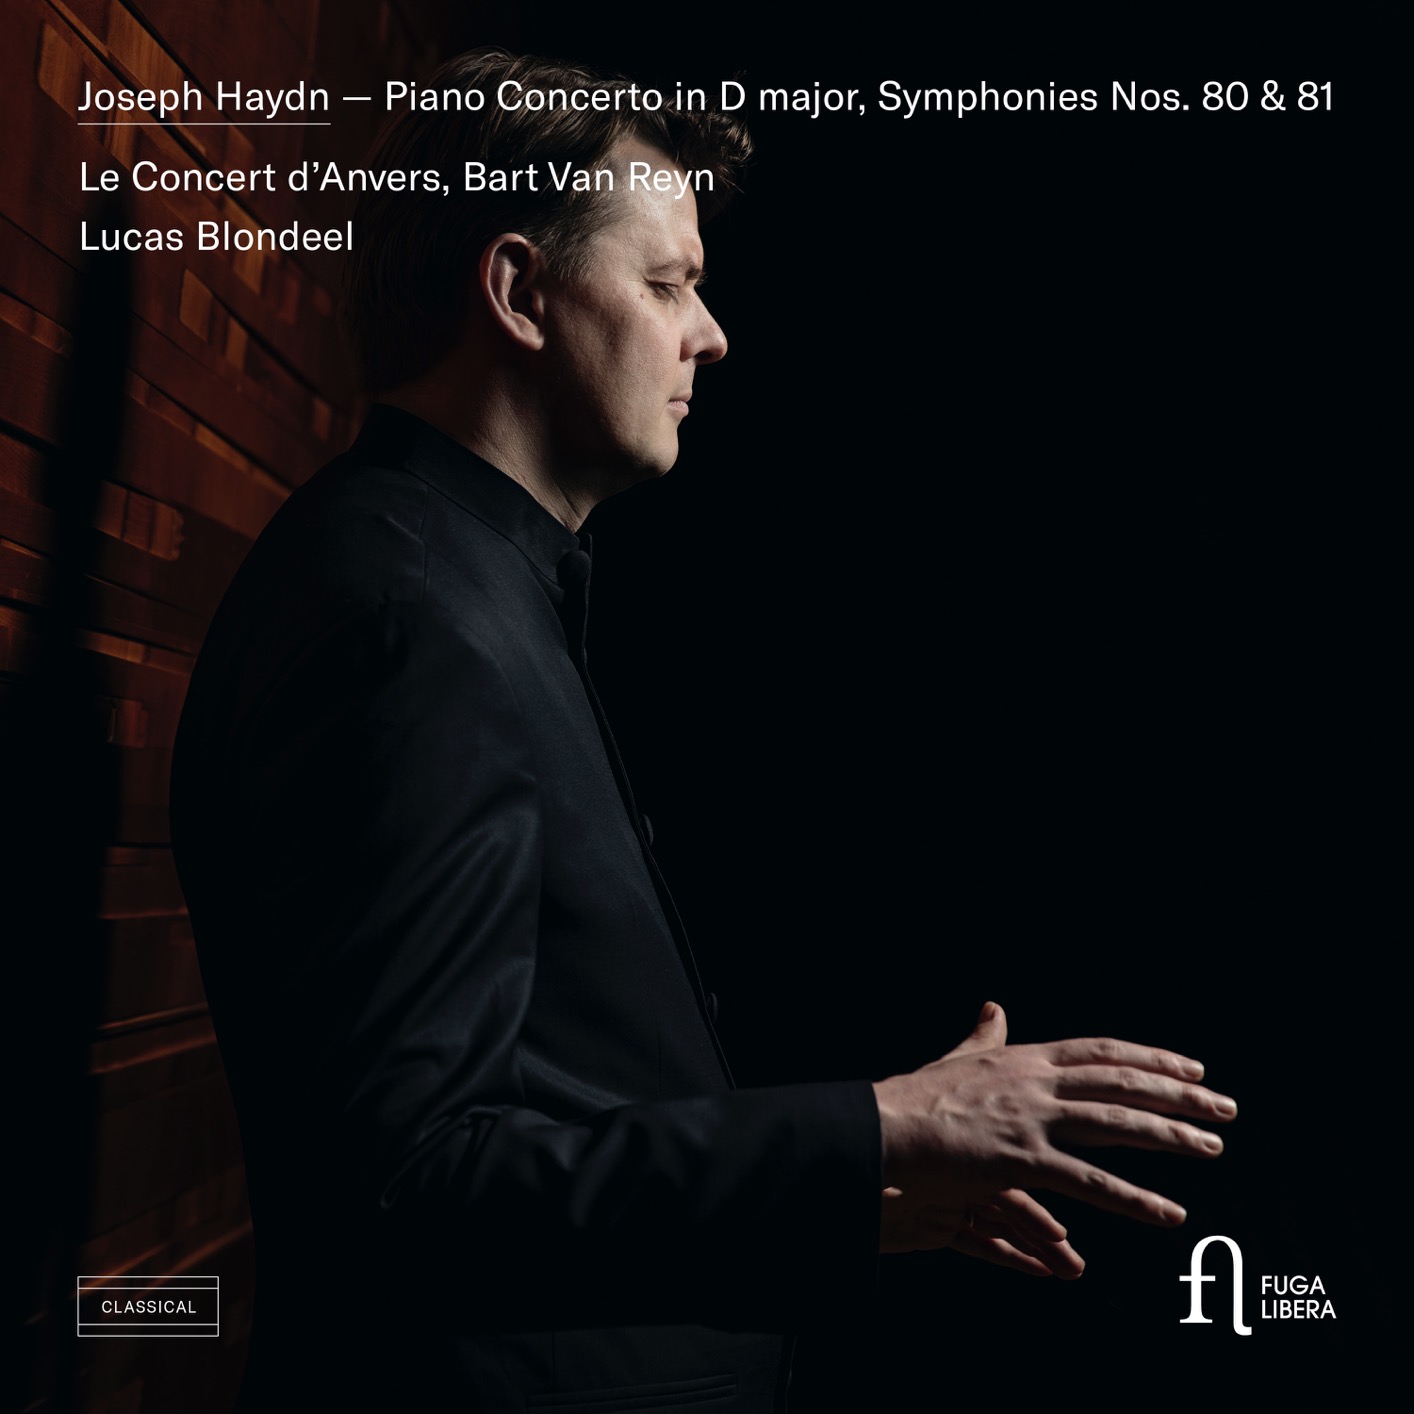 Bart Van Reyn, Lucas Blondeel & Le Concert d’Anvers - Haydn: Piano Concerto in D major, Symphonies Nos. 80 & 81 (2019) [FLAC 24bit/96kHz]